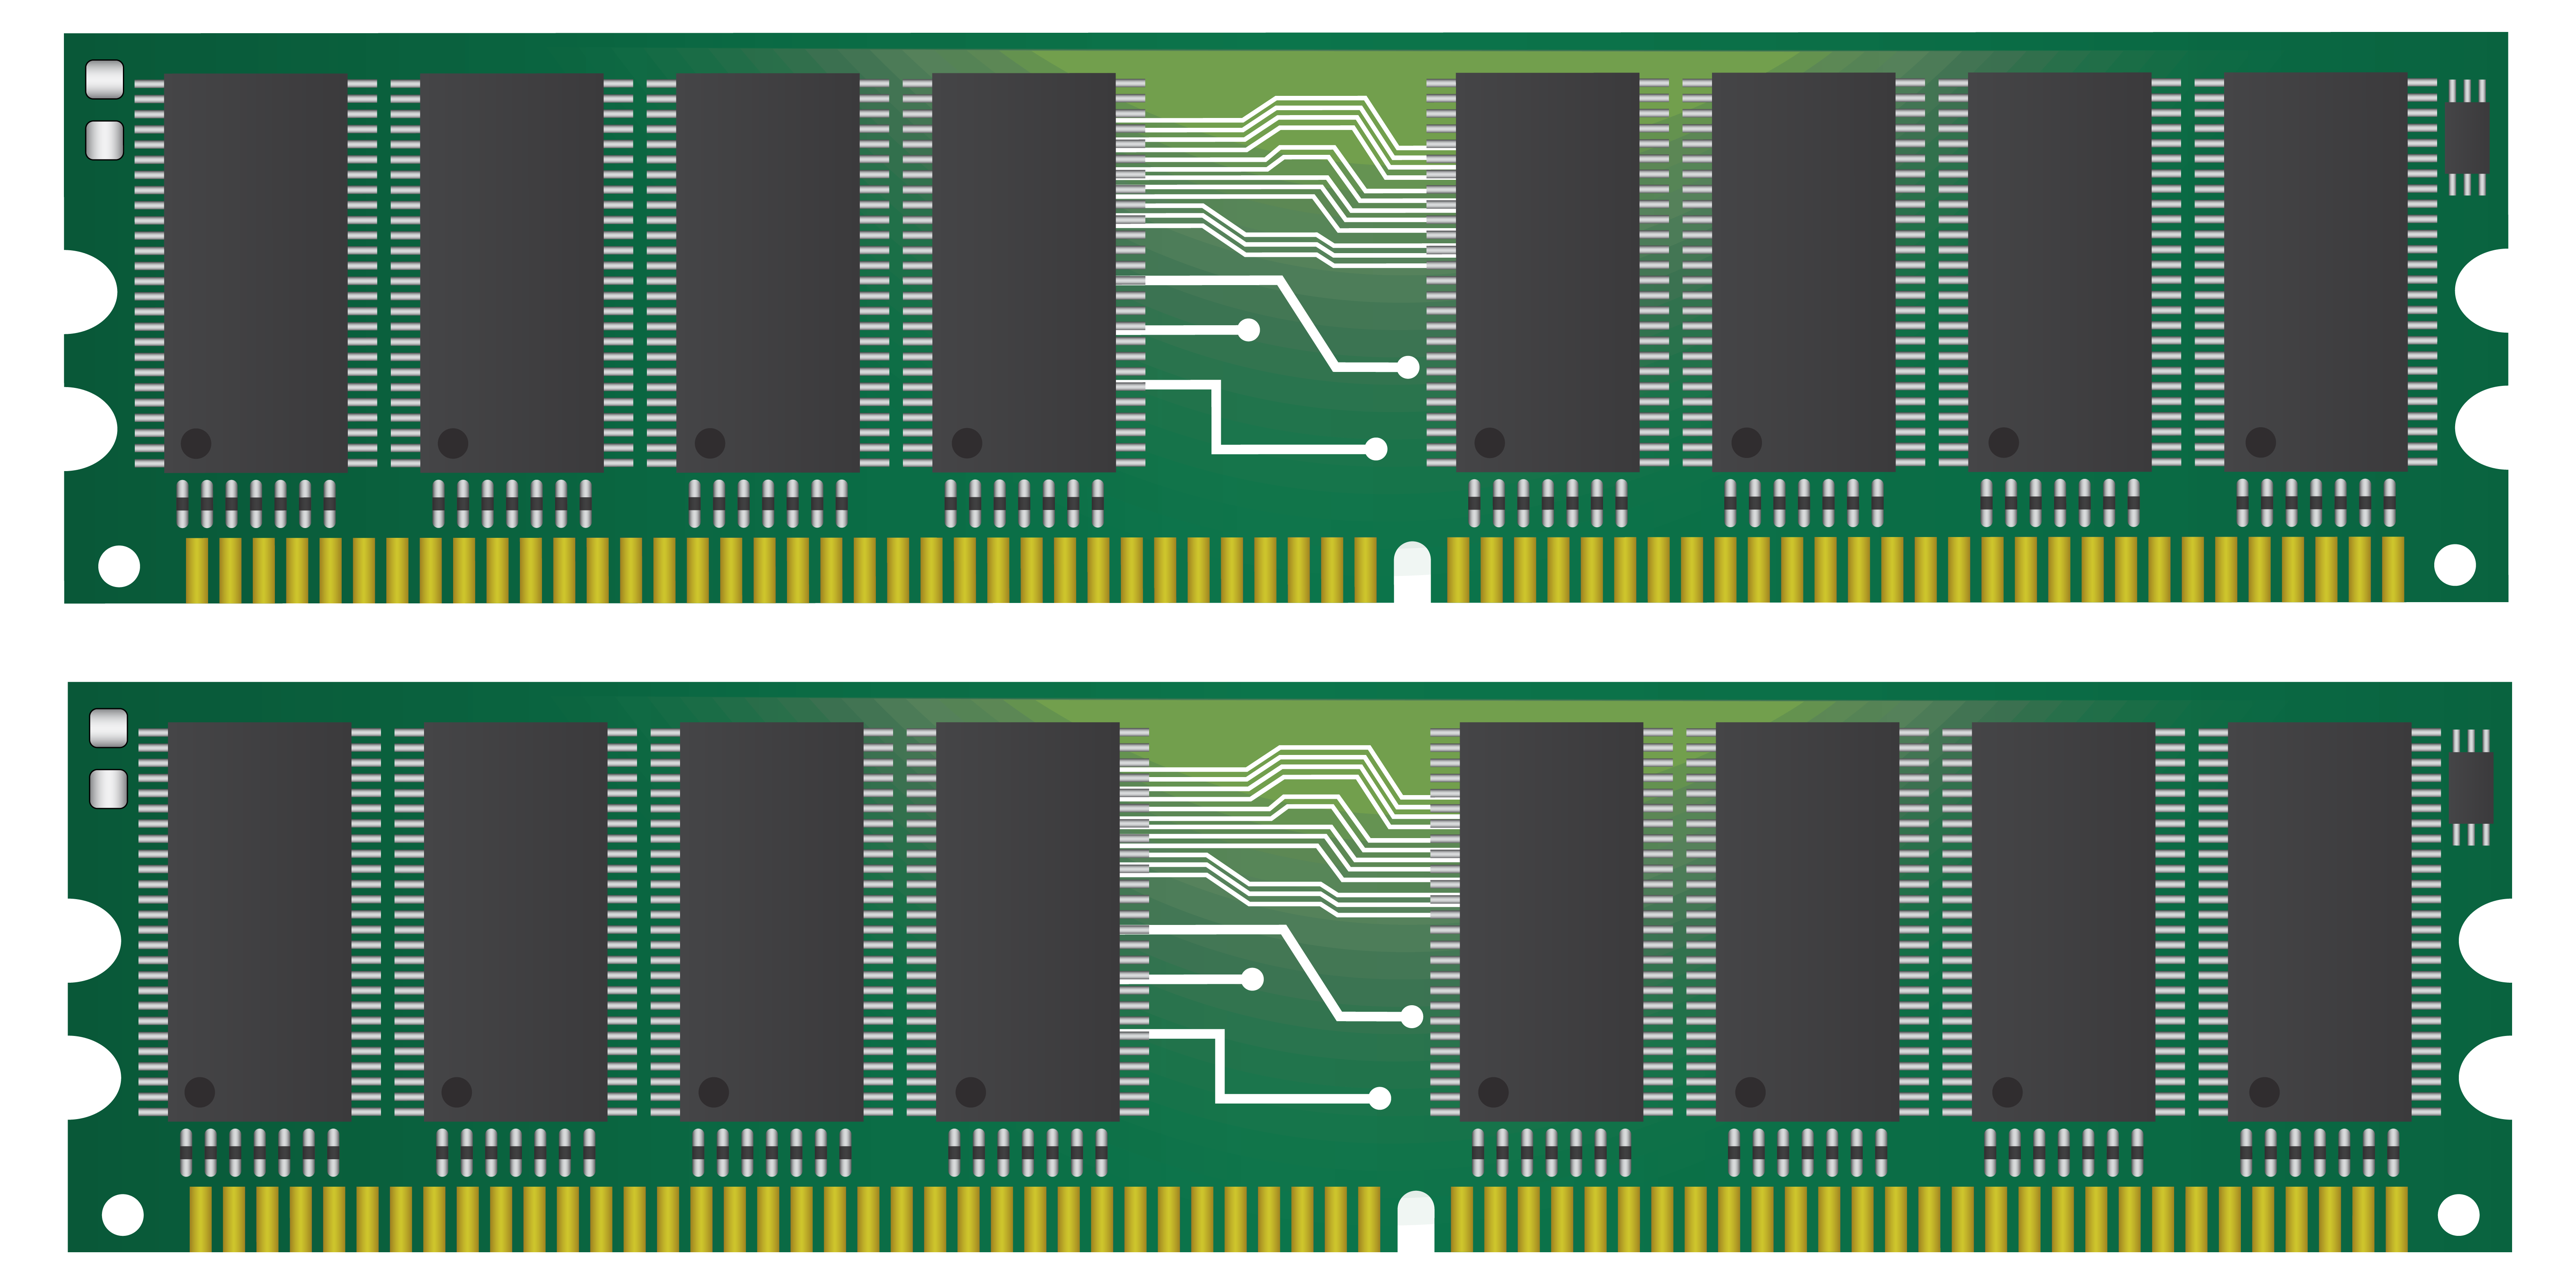 64 gb ram. Оперативная память (Ram). Ddr3 dblt4gn568s. Ram диск ddr4 PCI-E. Плашки оперативной памяти для ПК.